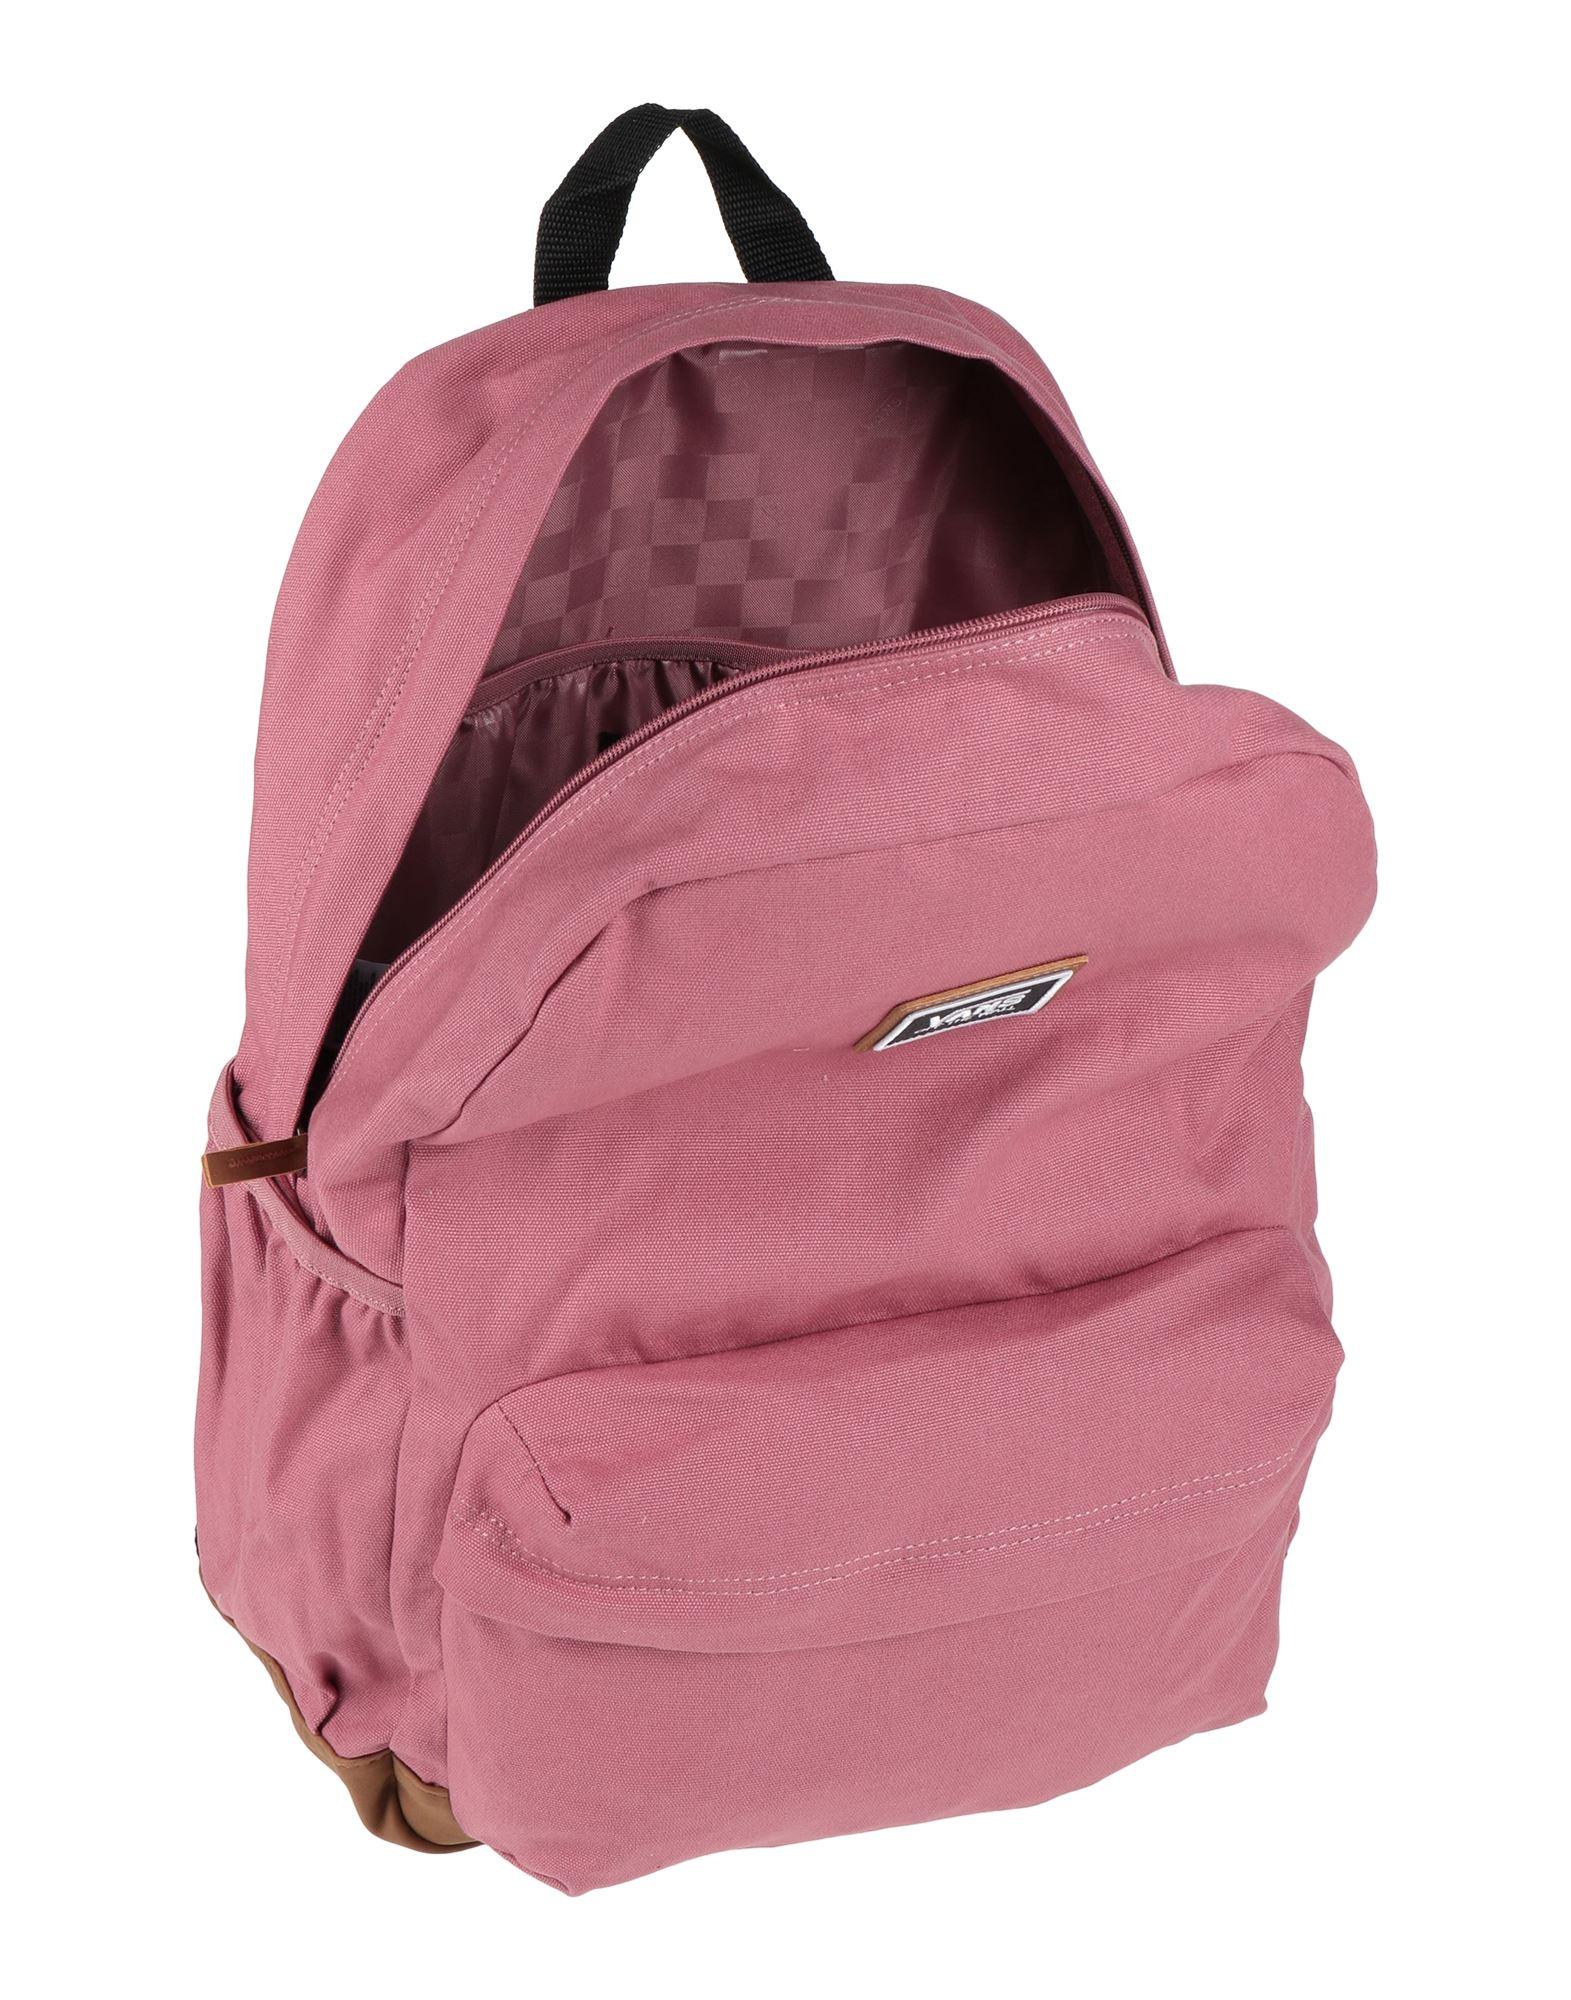 Vans Backpack in Pink | Lyst